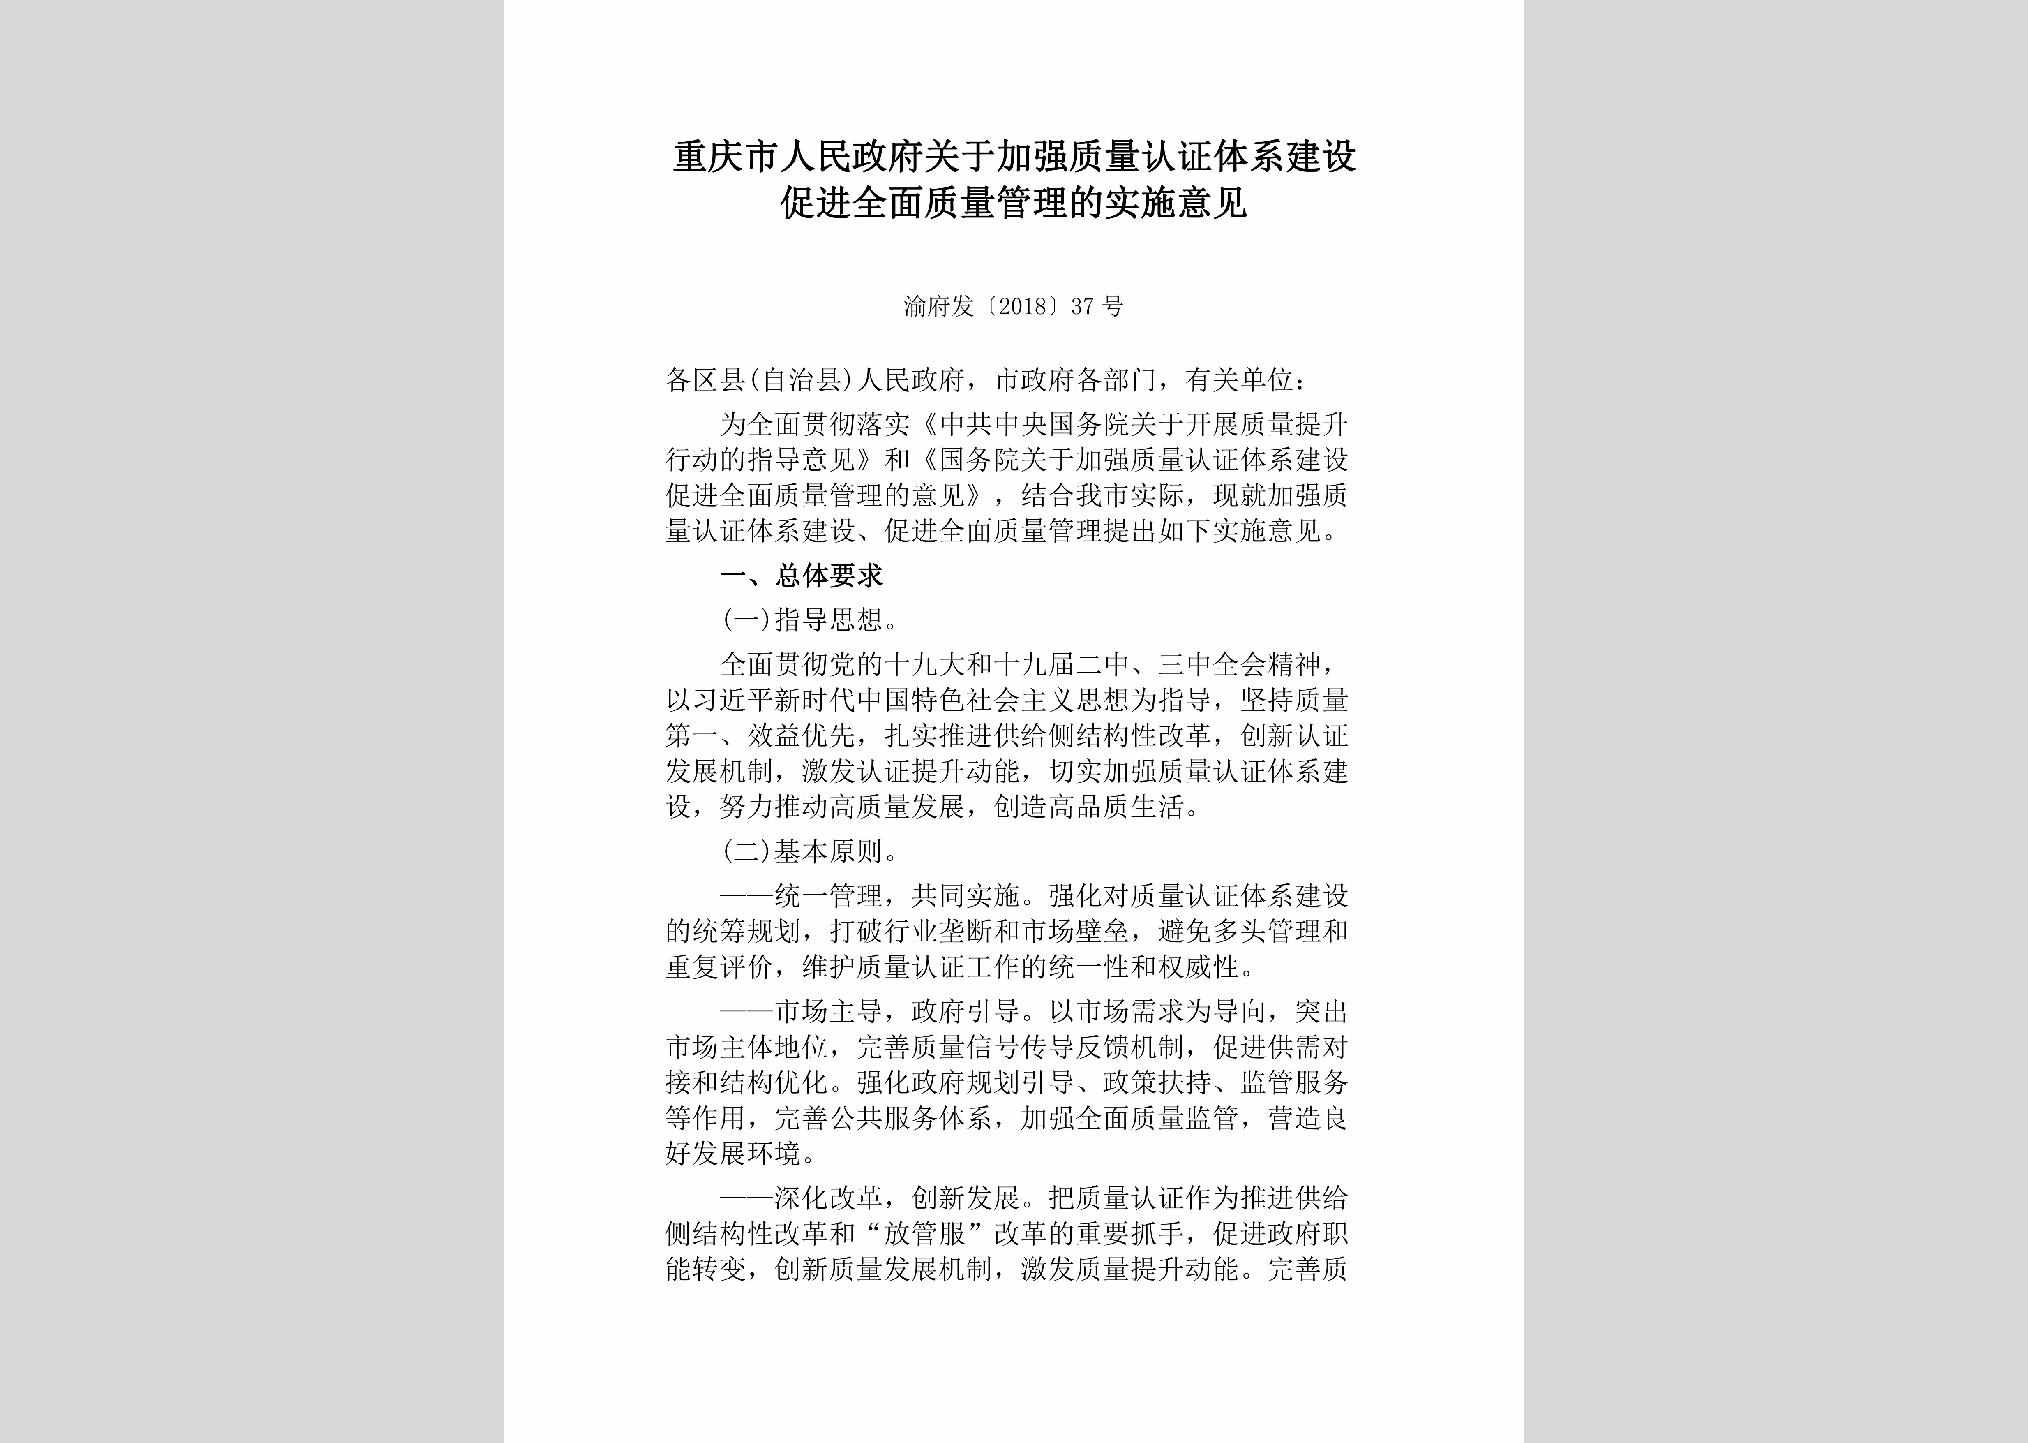 渝府发[2018]37号：重庆市人民政府关于加强质量认证体系建设促进全面质量管理的实施意见